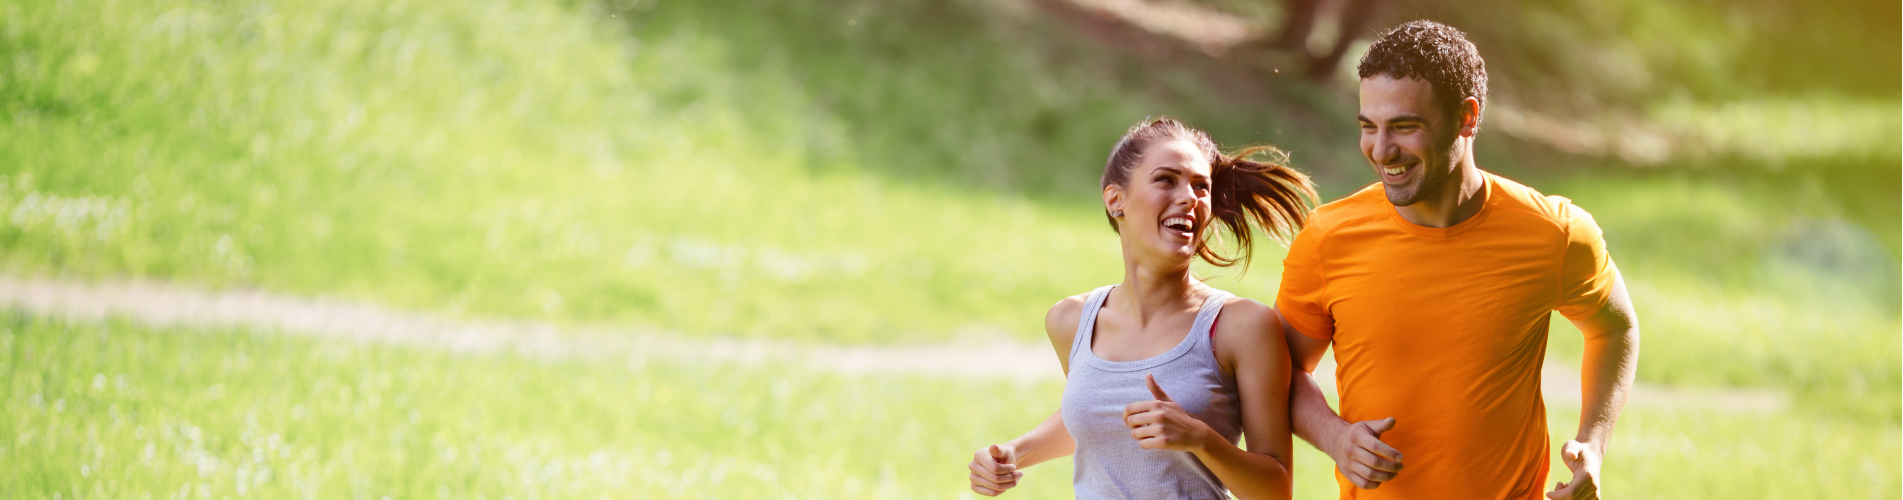 exercícios físicos, 9 mitos e verdades sobre exercícios físicos que você precisa saber, Abreu Cardiologia